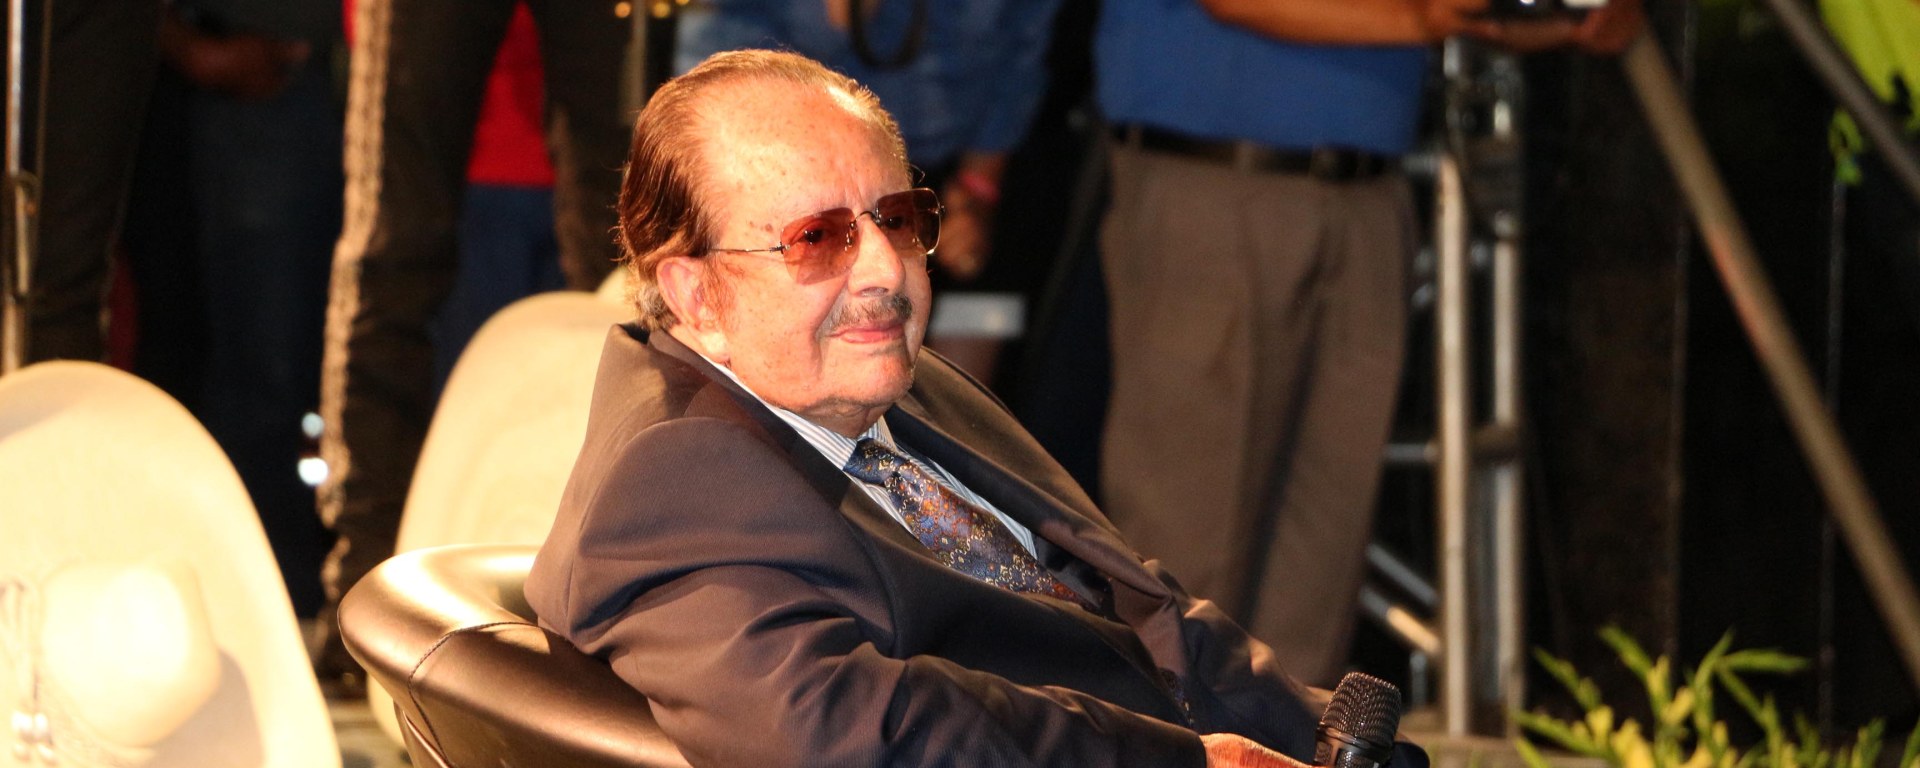 Murió el compositor mexicano Rubén Fuentes, autor de “La bikina”